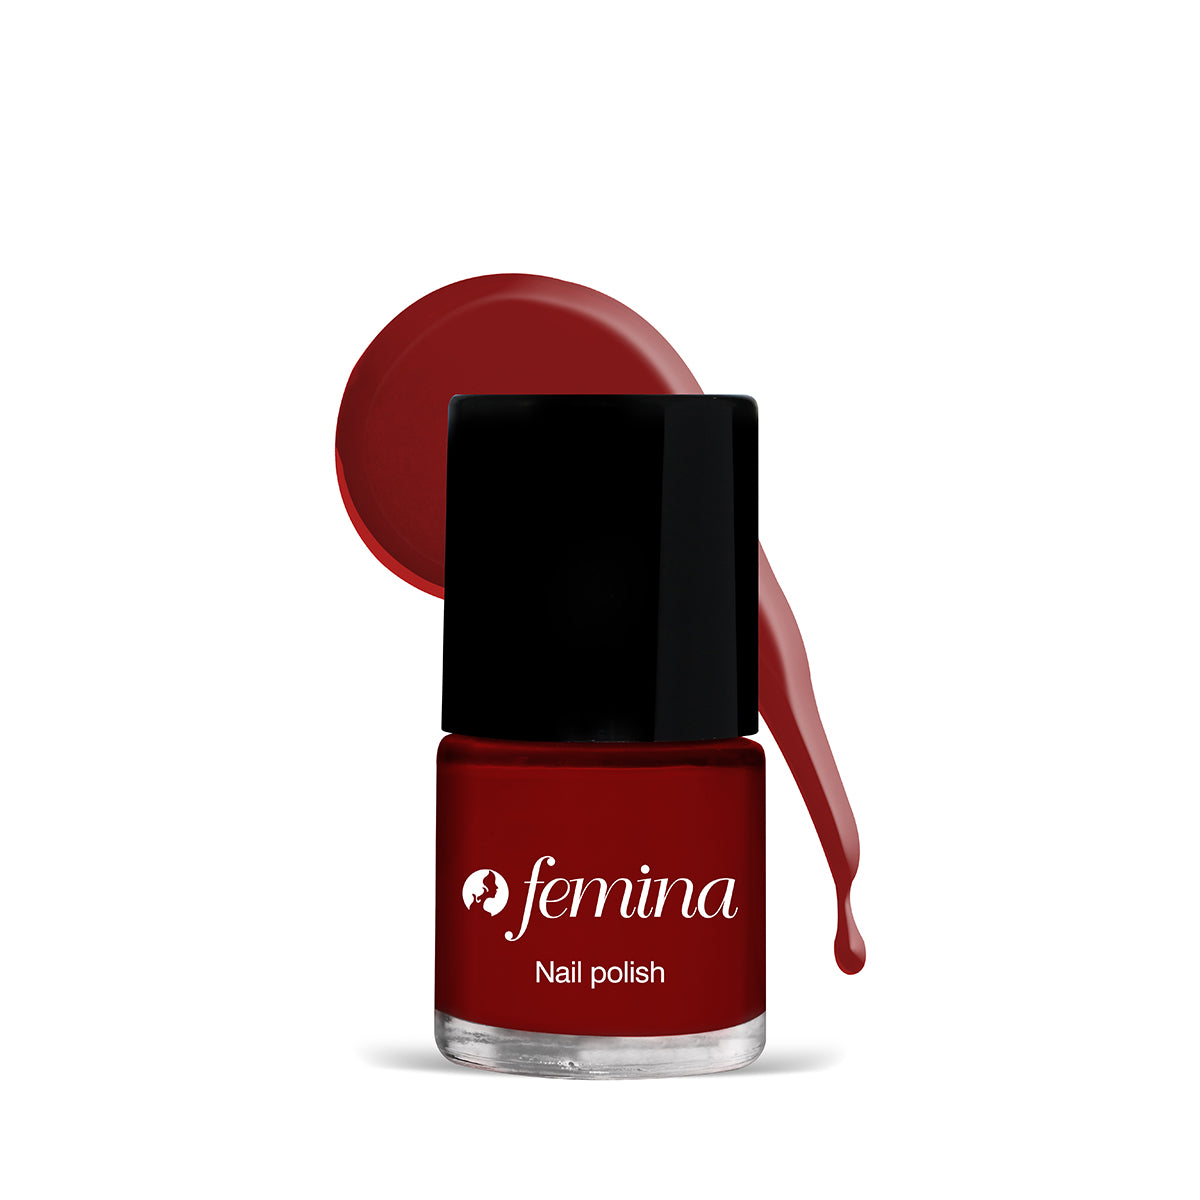 Femina - Nail Polish - 514 Red Cherry